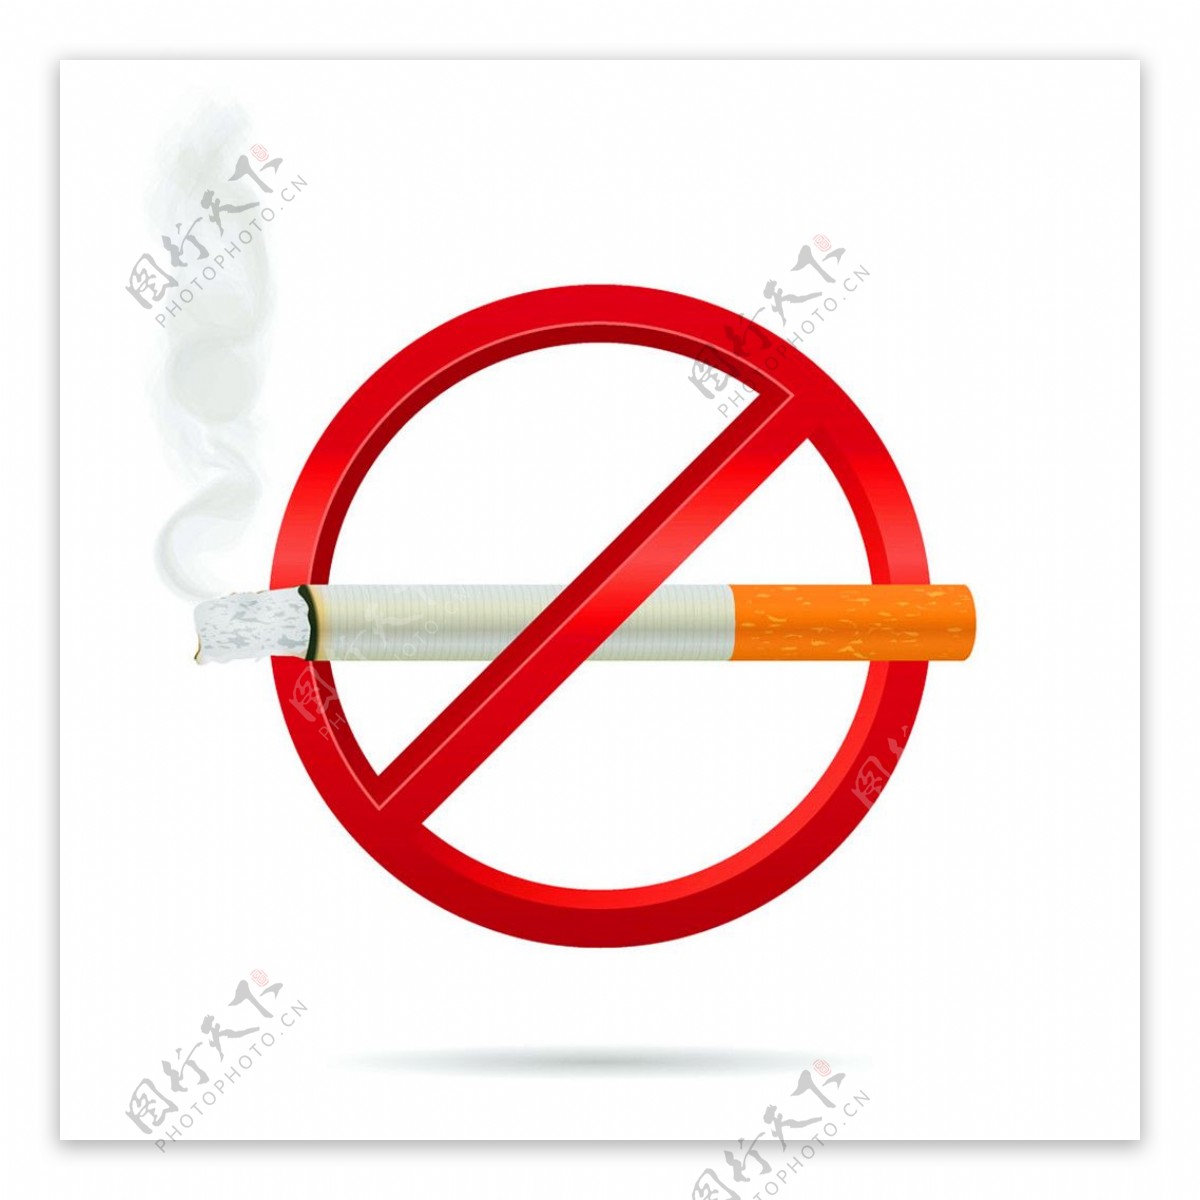 立体禁烟标签图片